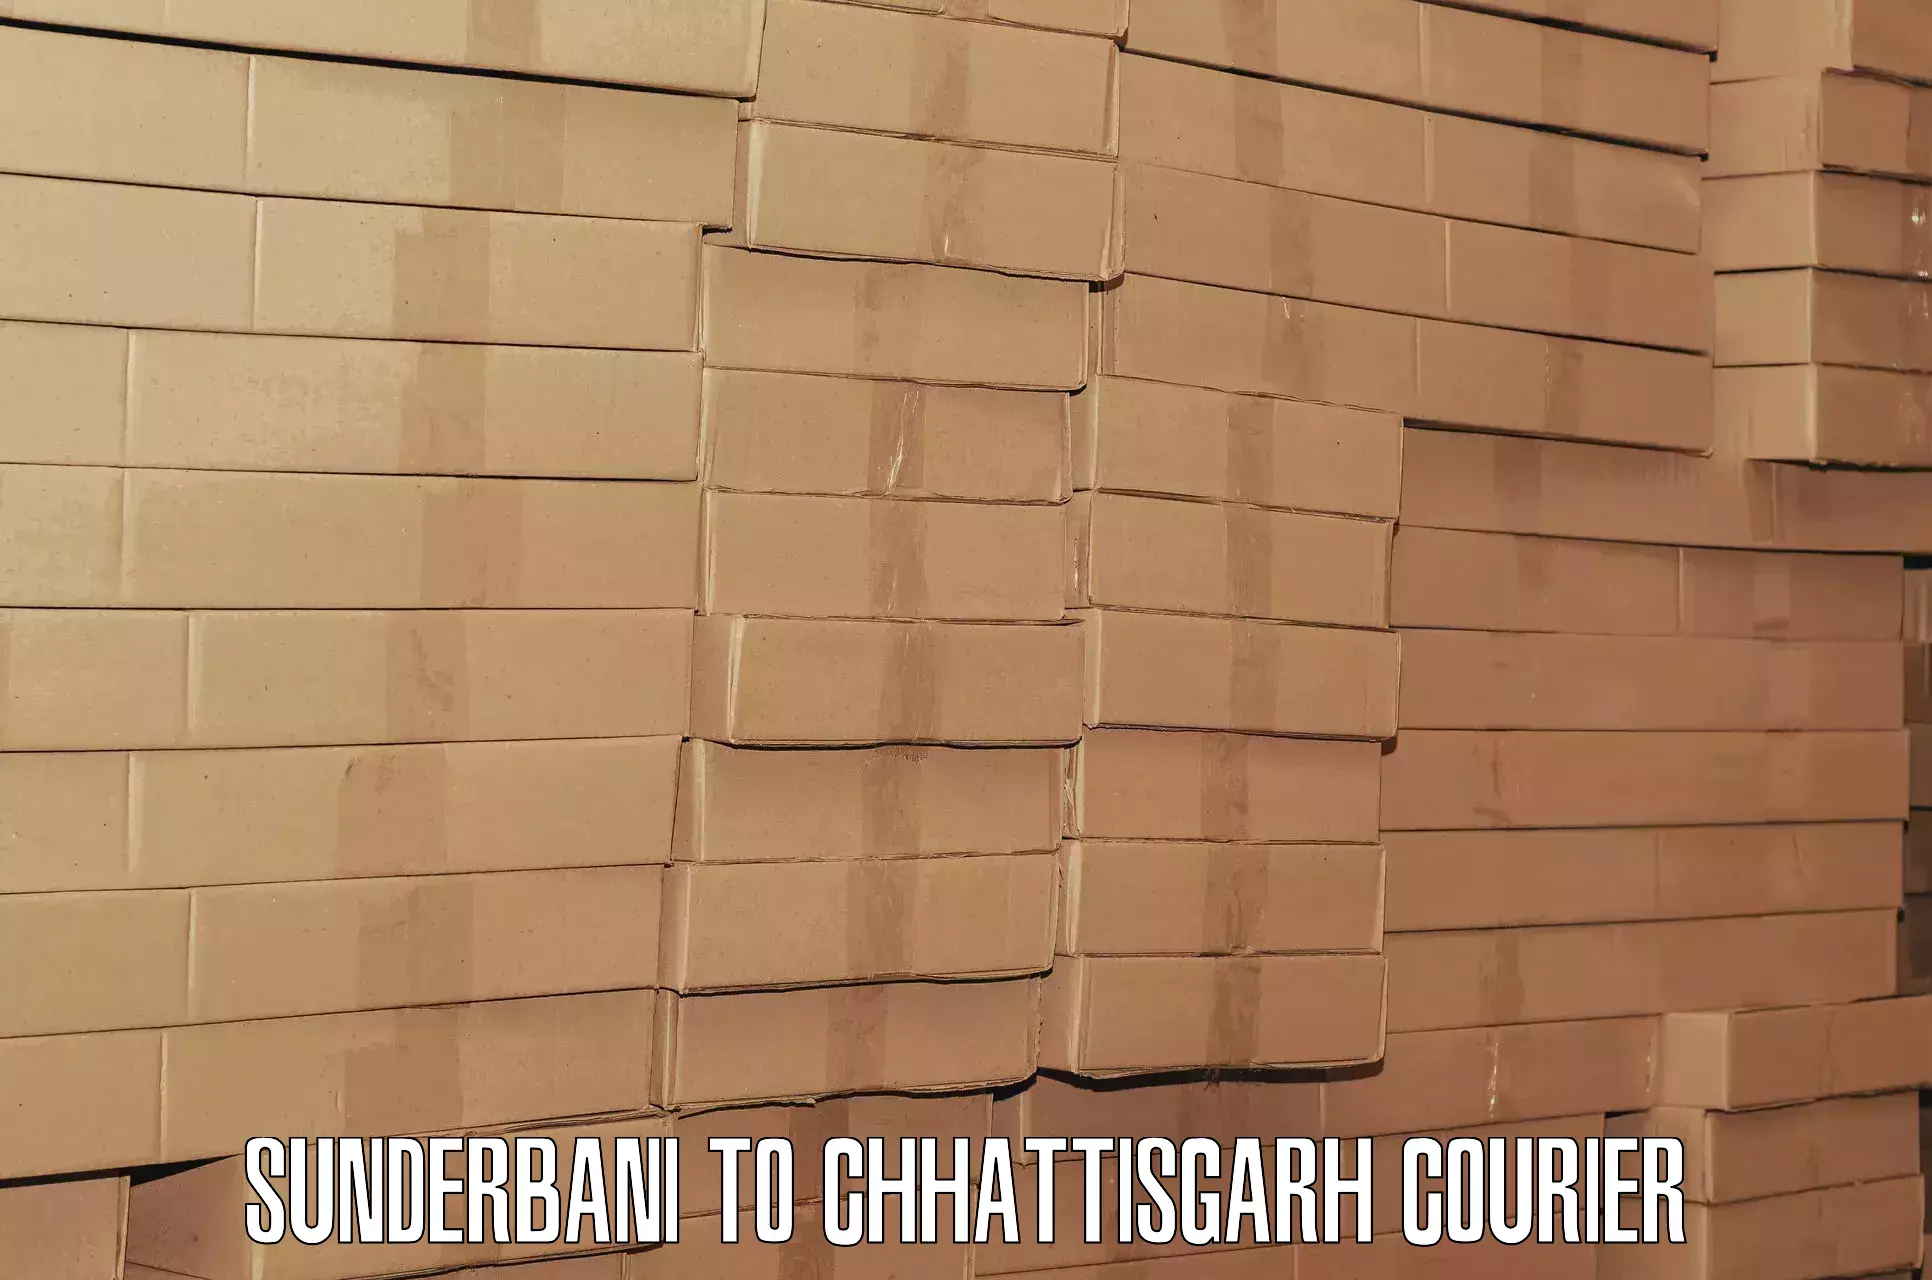 Luggage delivery app Sunderbani to Pathalgaon